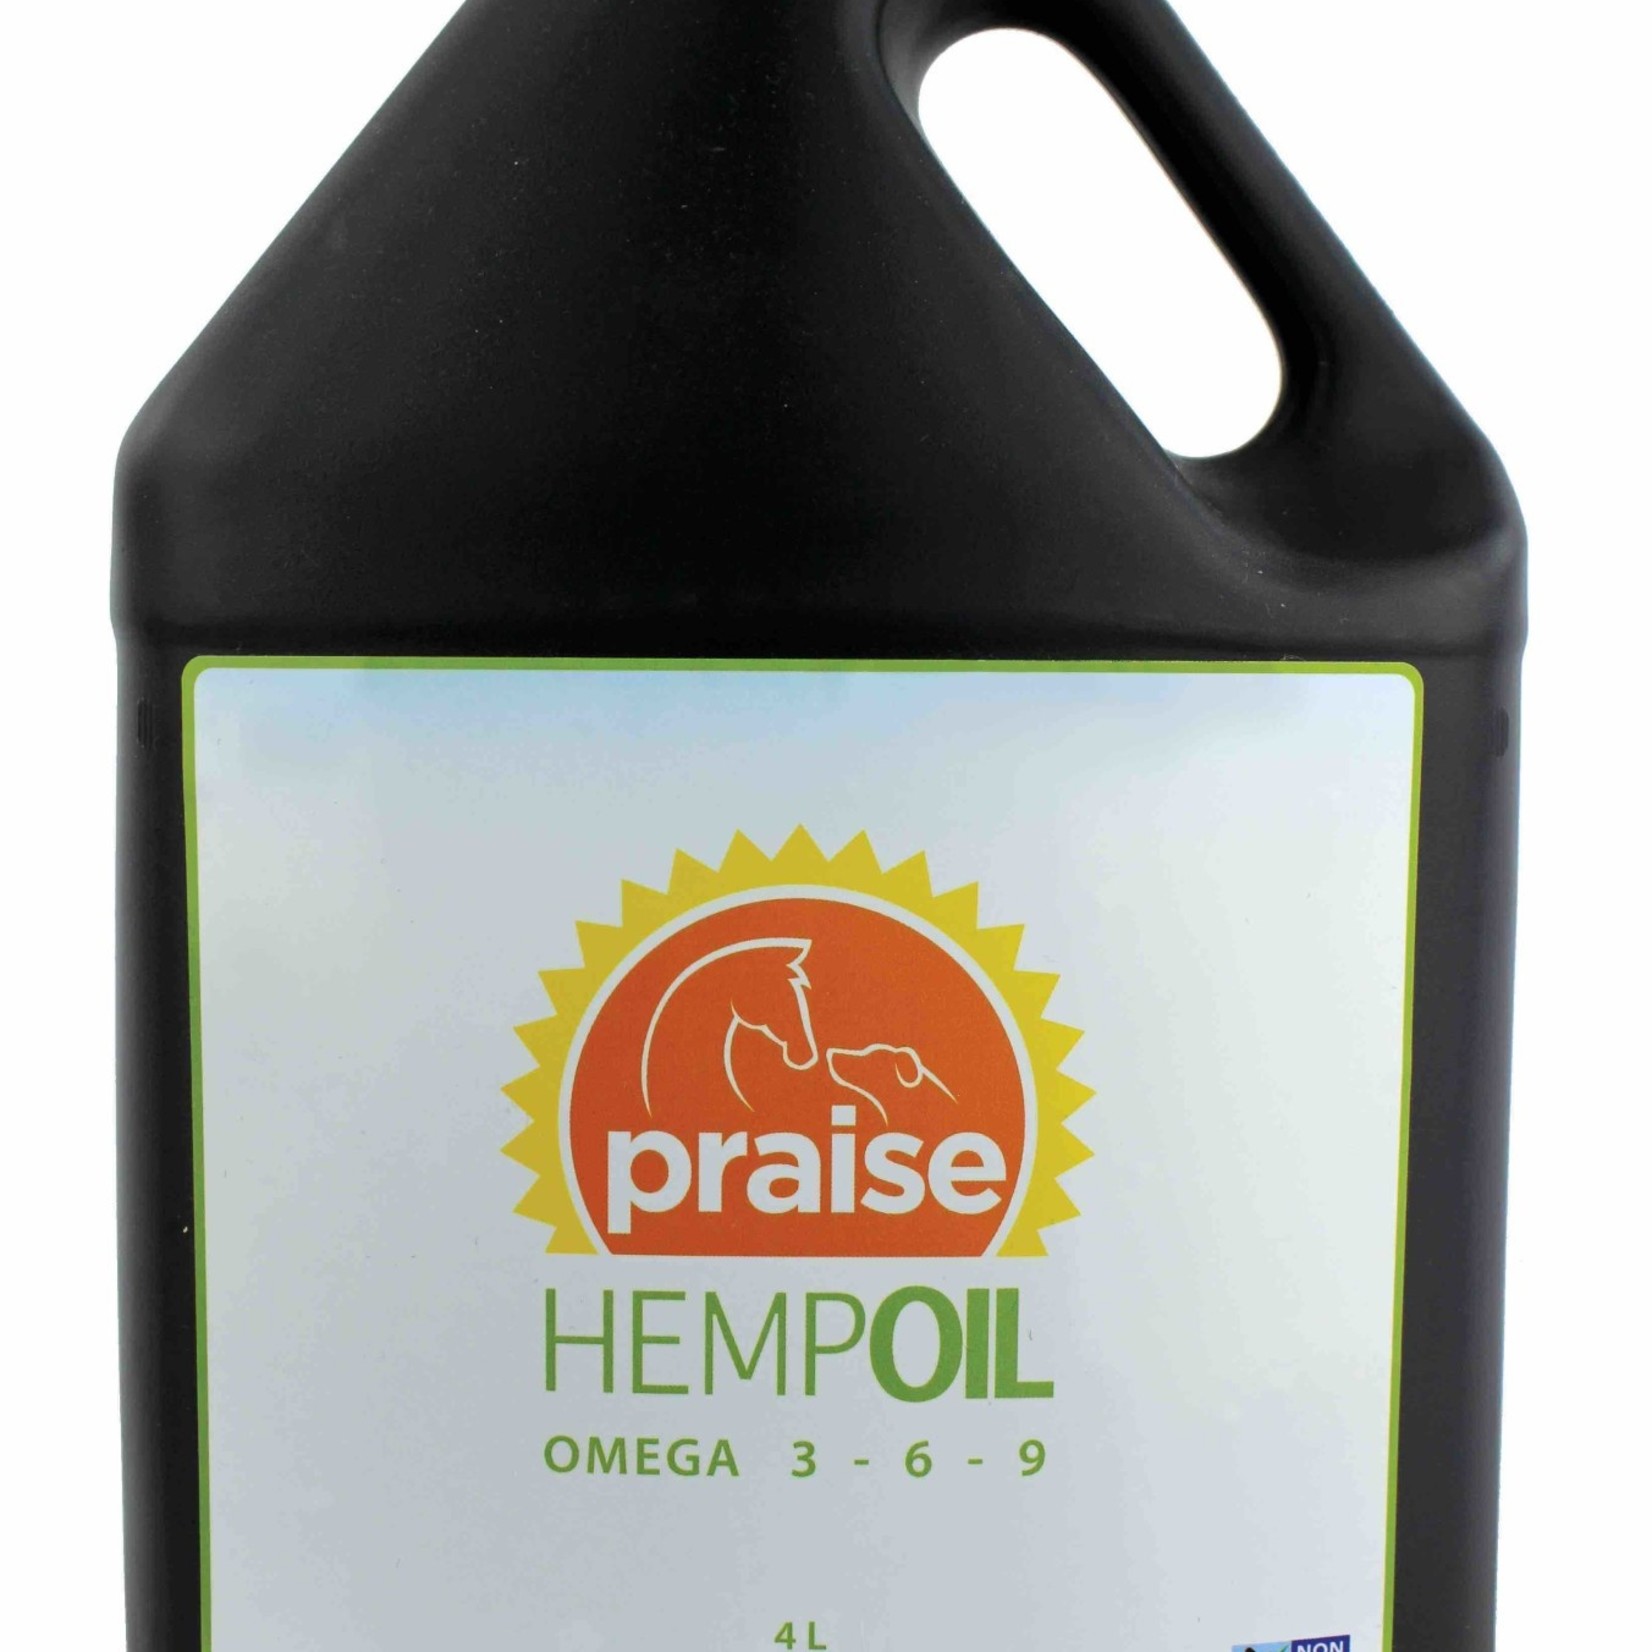 Praise hemp Praise Hemp Oil 4L